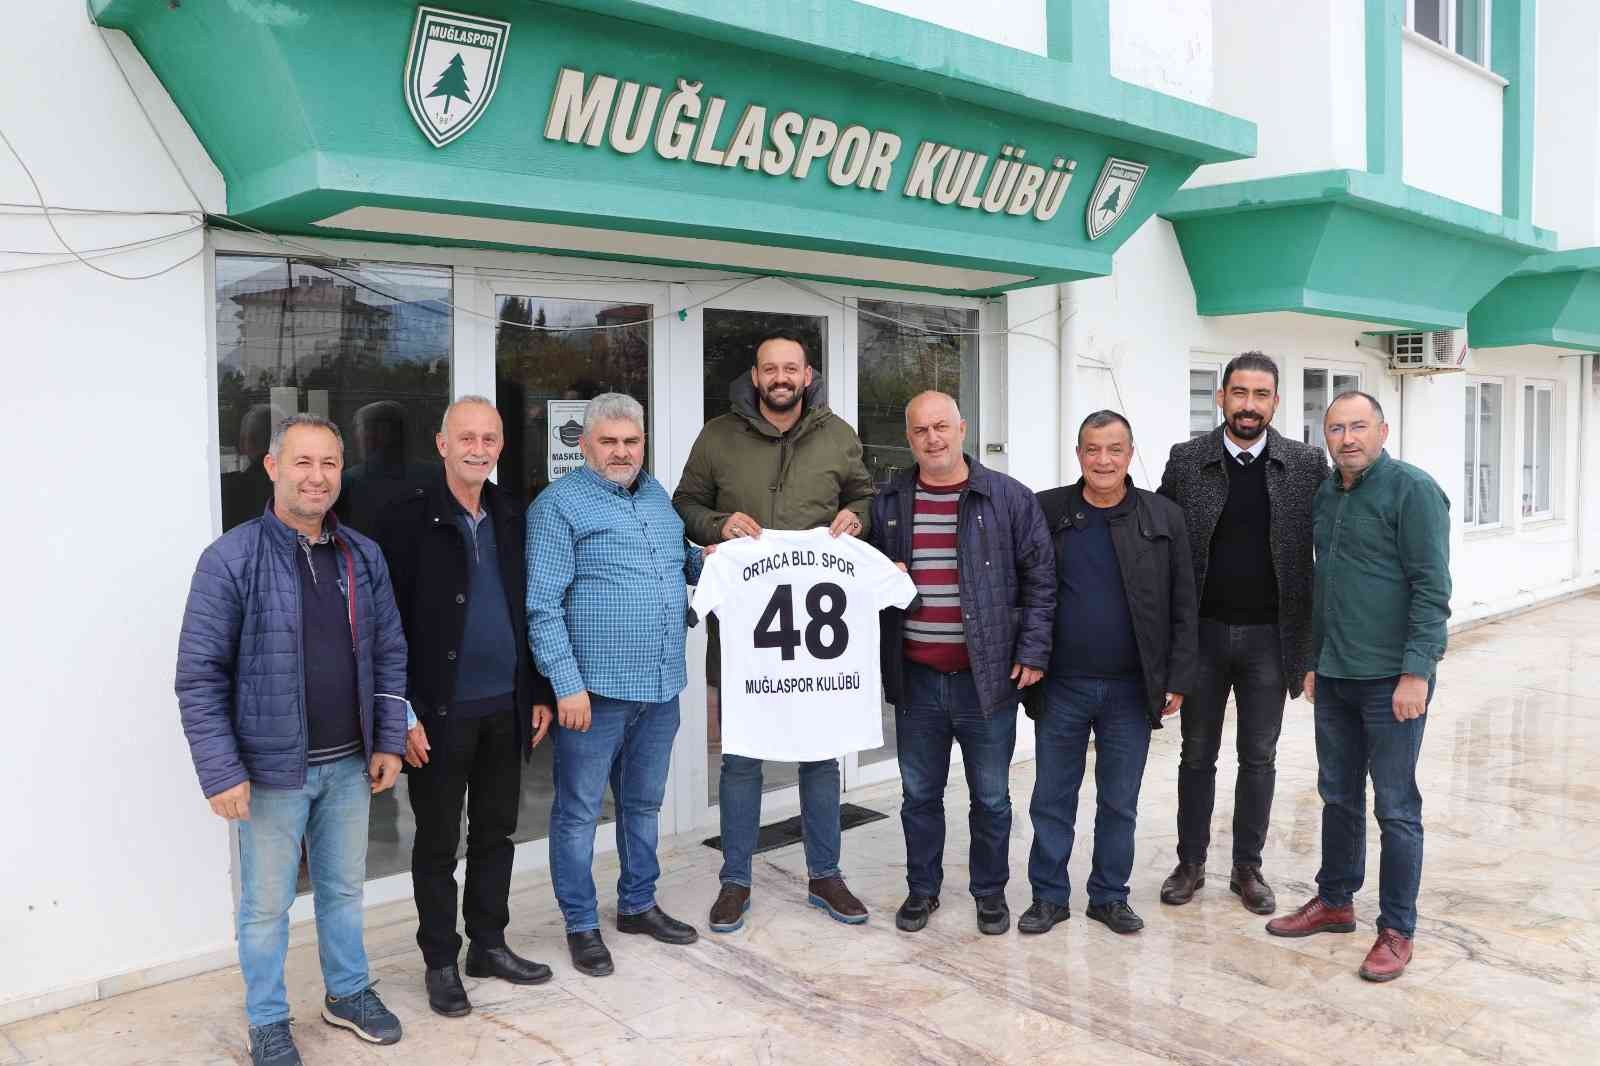 Ortaca Belediyespor yönetiminden Muğlaspor’a ziyaret #mugla